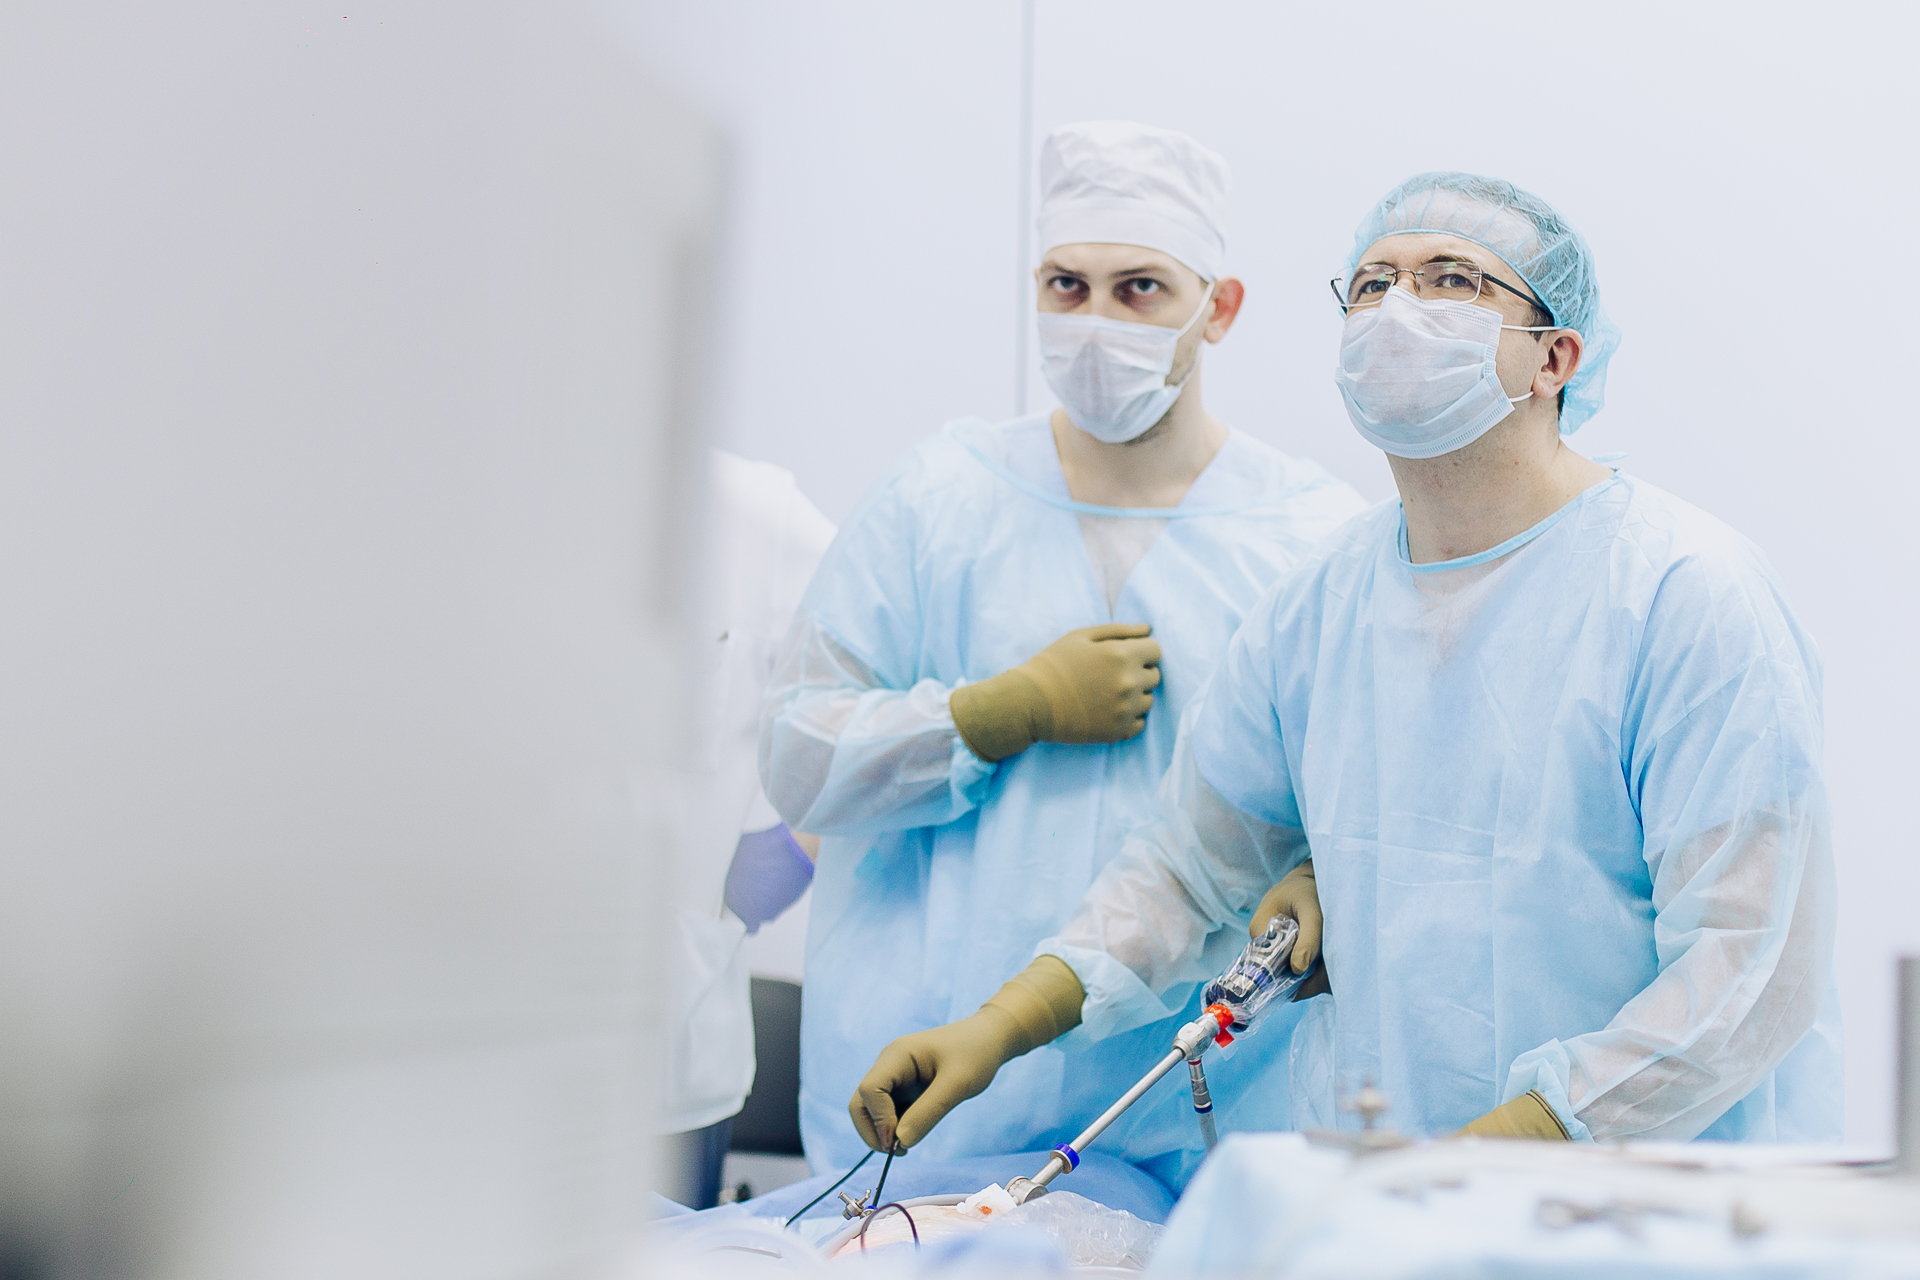  Работа с пациентом организована по принципу fast-track surgery, то есть хирургия ускоренной реабилитации